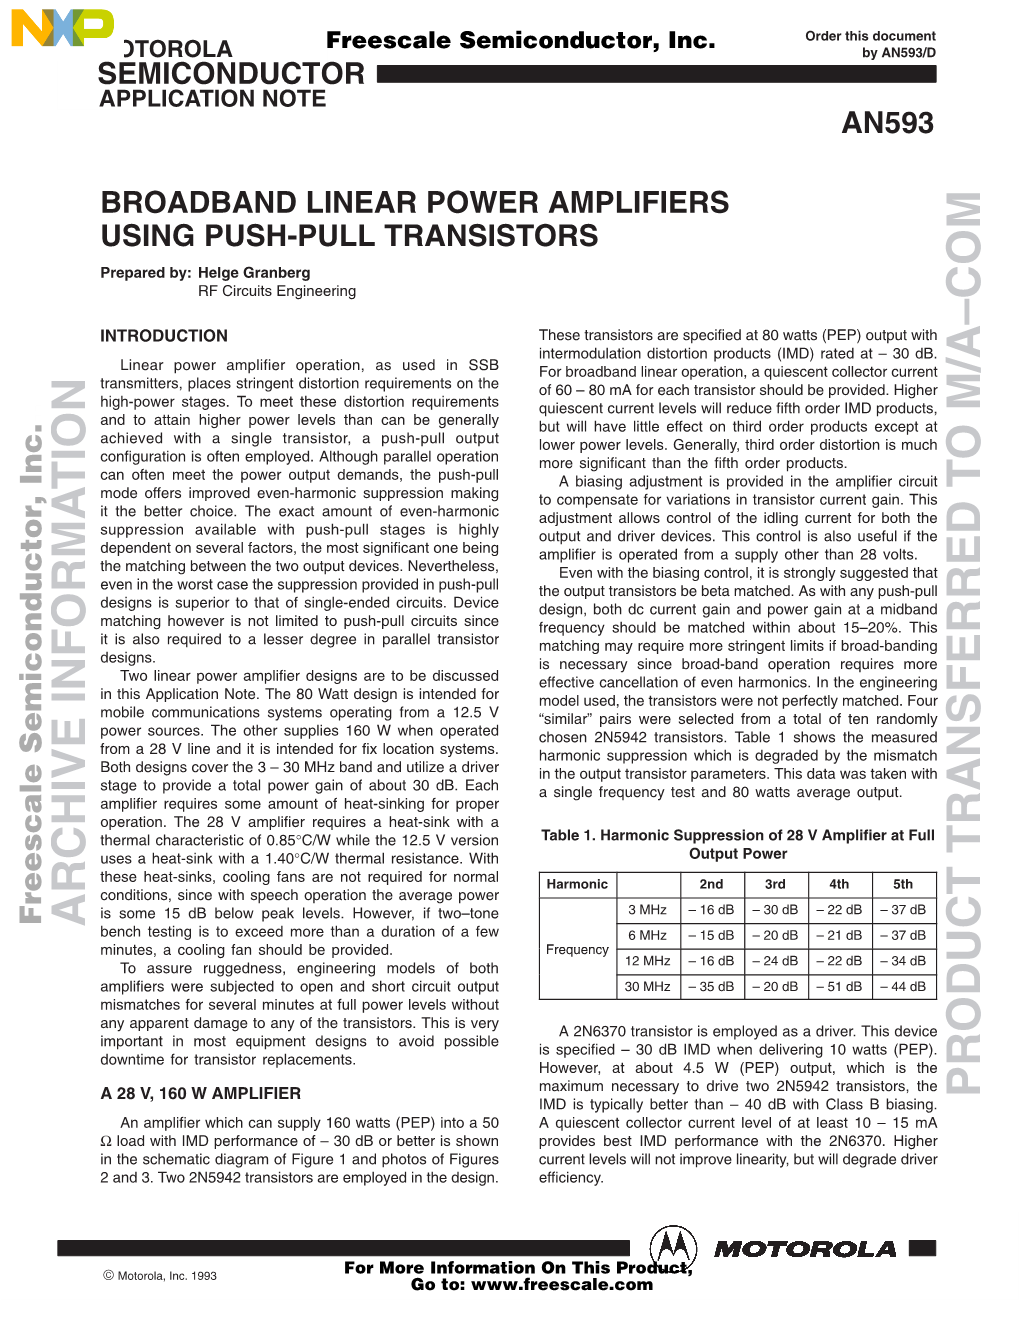 AN593: Broadband Linear Power Amplifiers